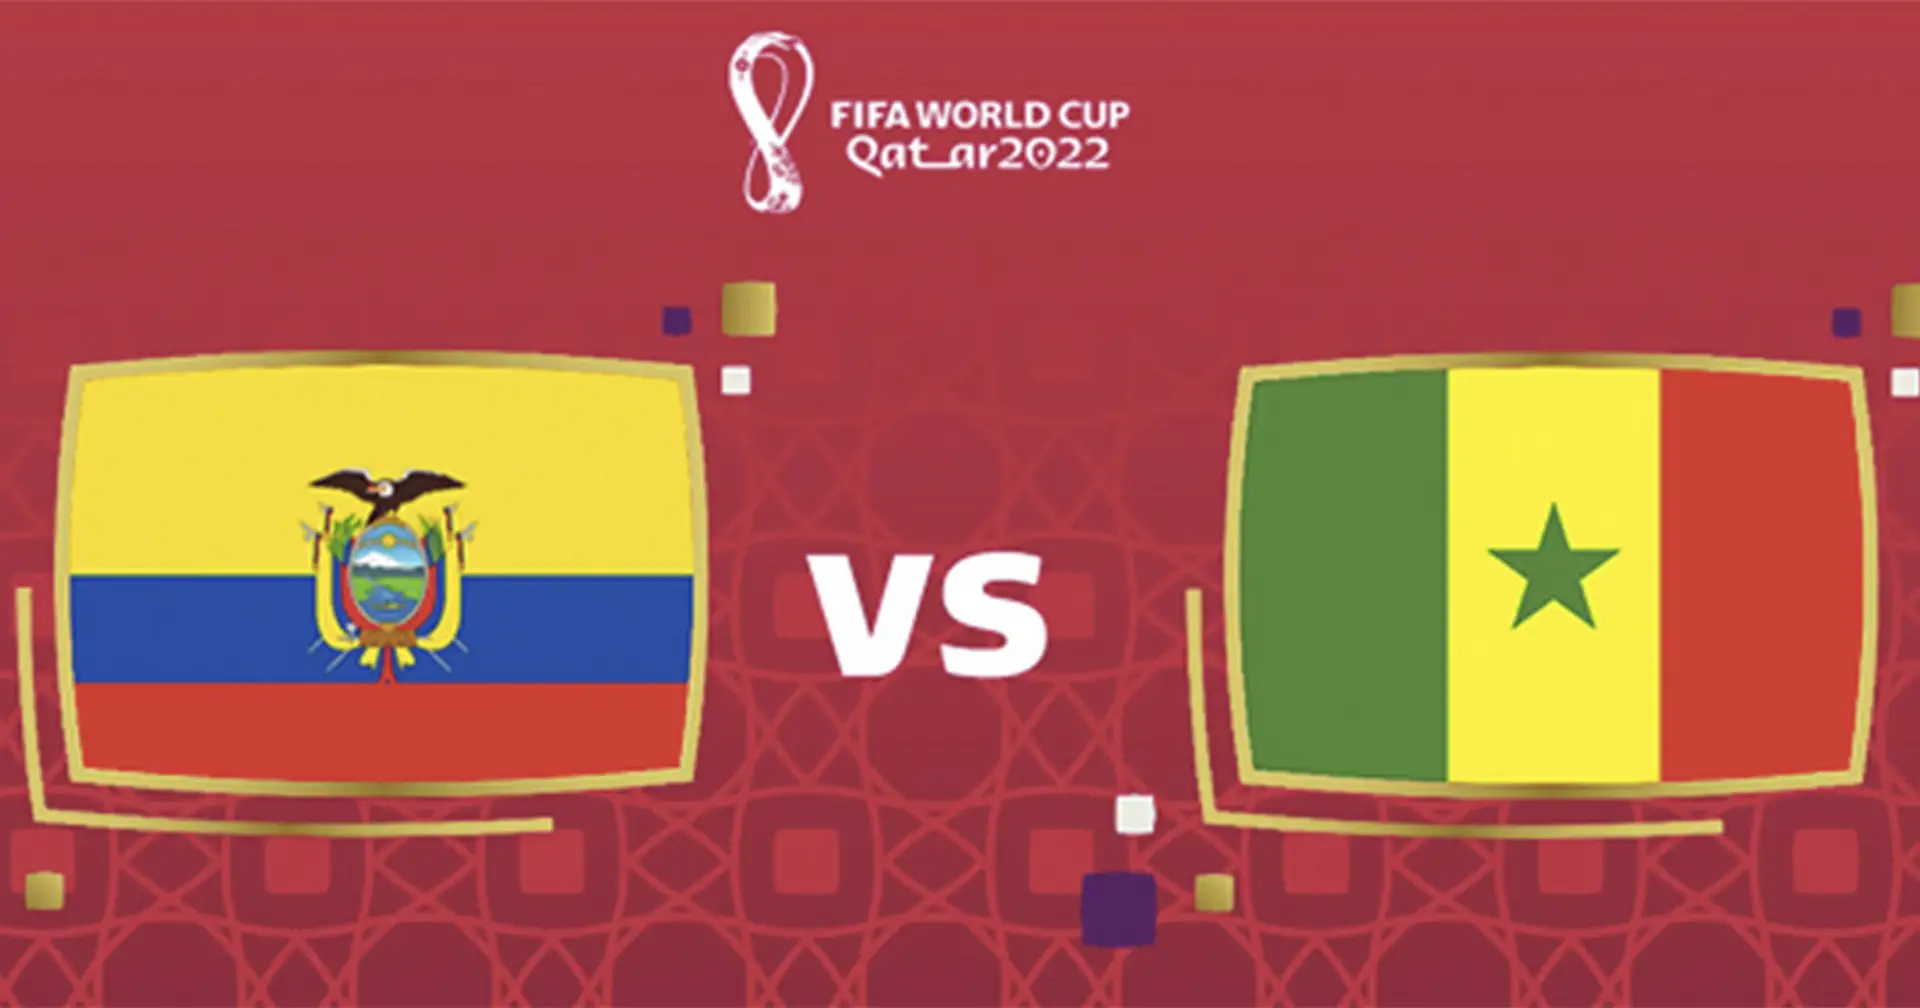 Ecuador v Senegal: Official team lineups for the World Cup clash revealed